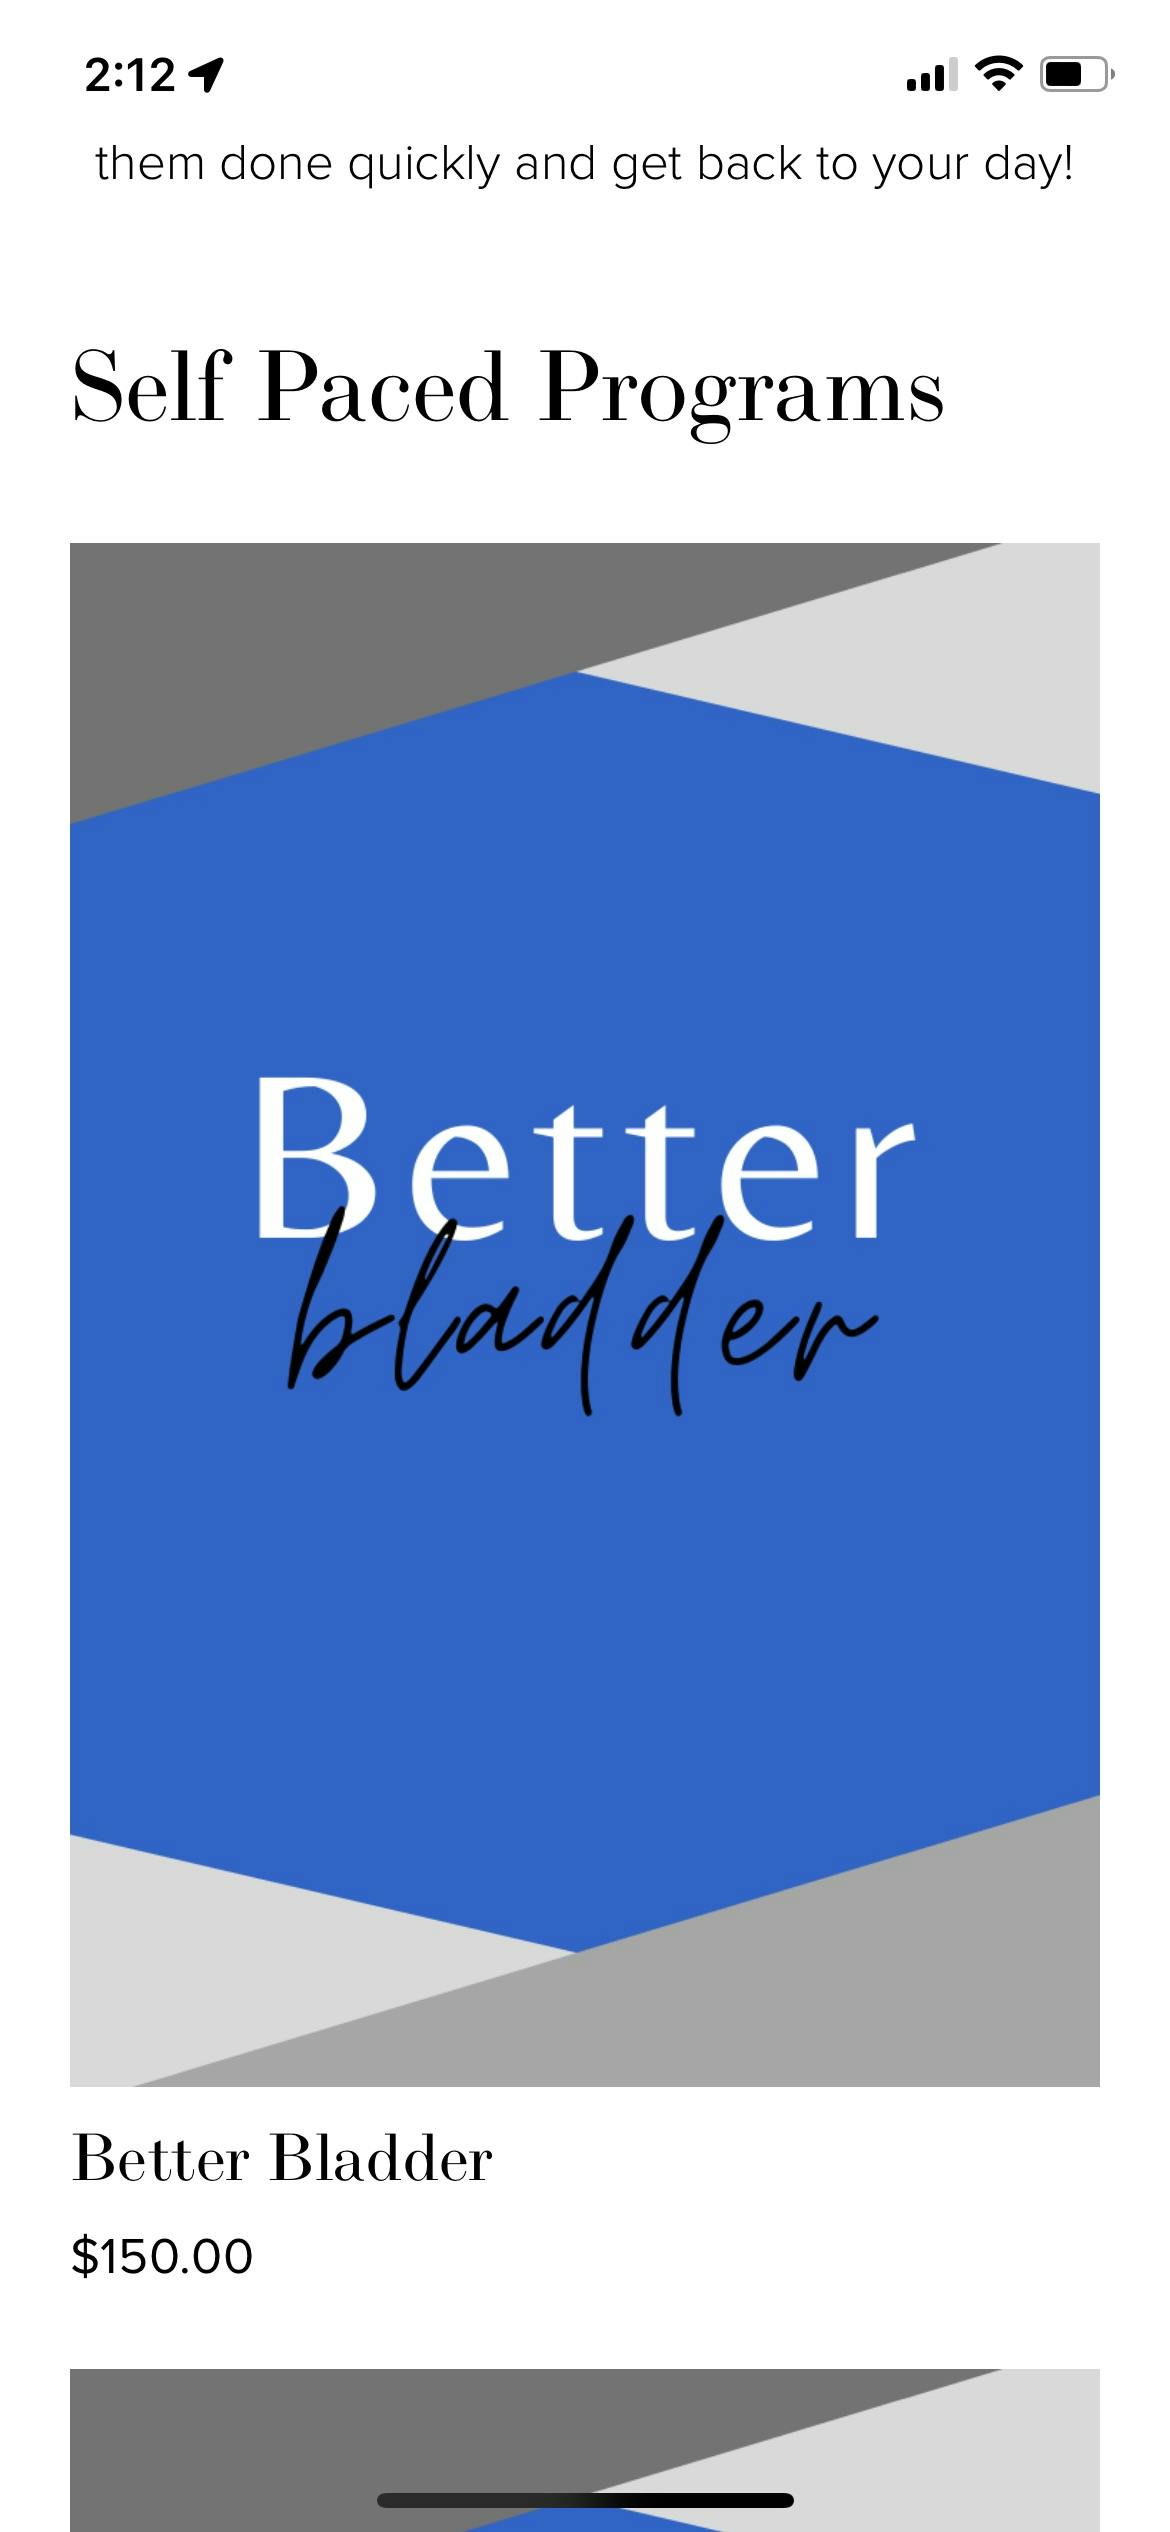 Better Bladder